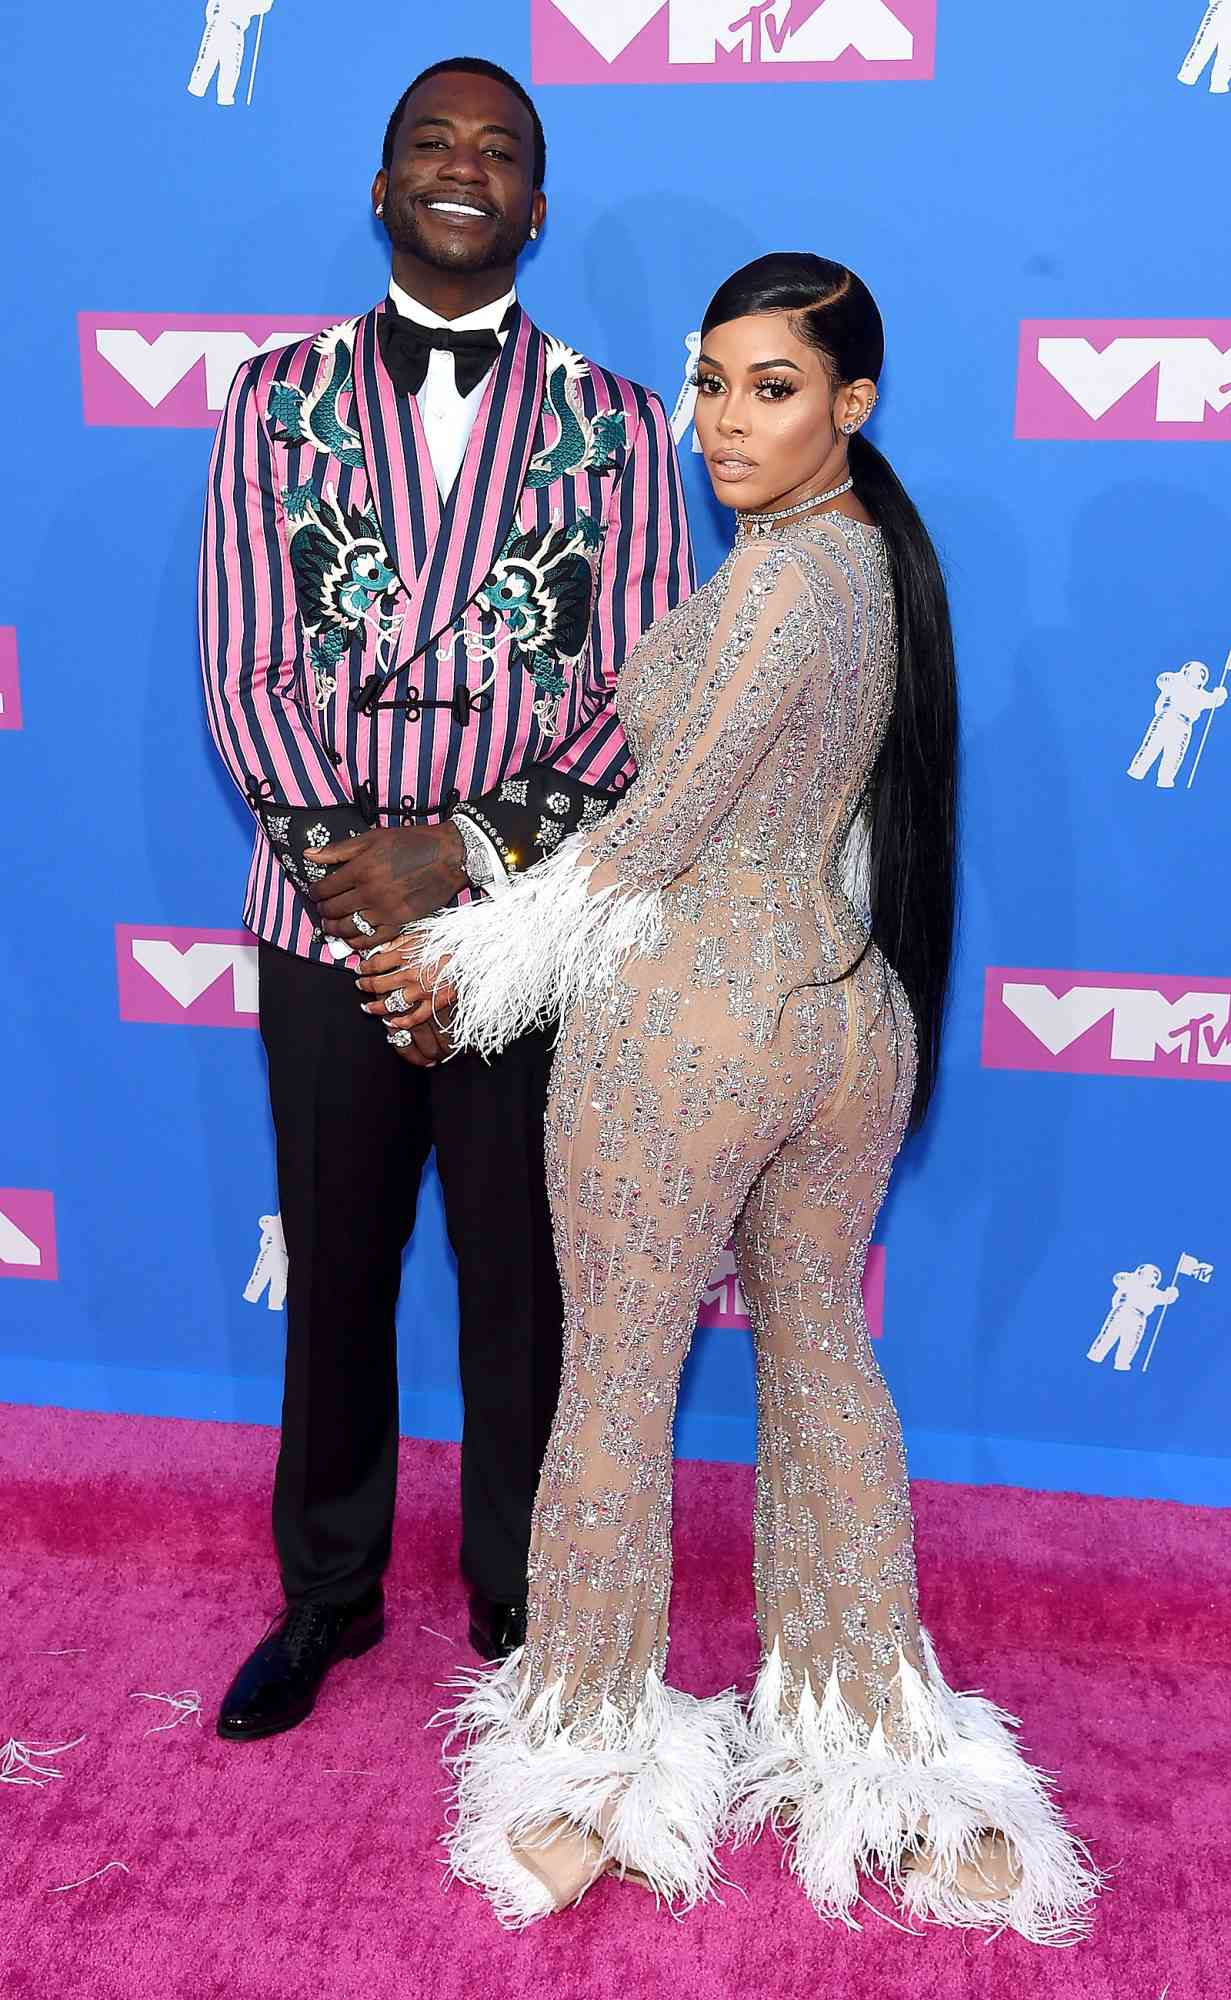 Gucci Mane and Keyshia Ka'Oir